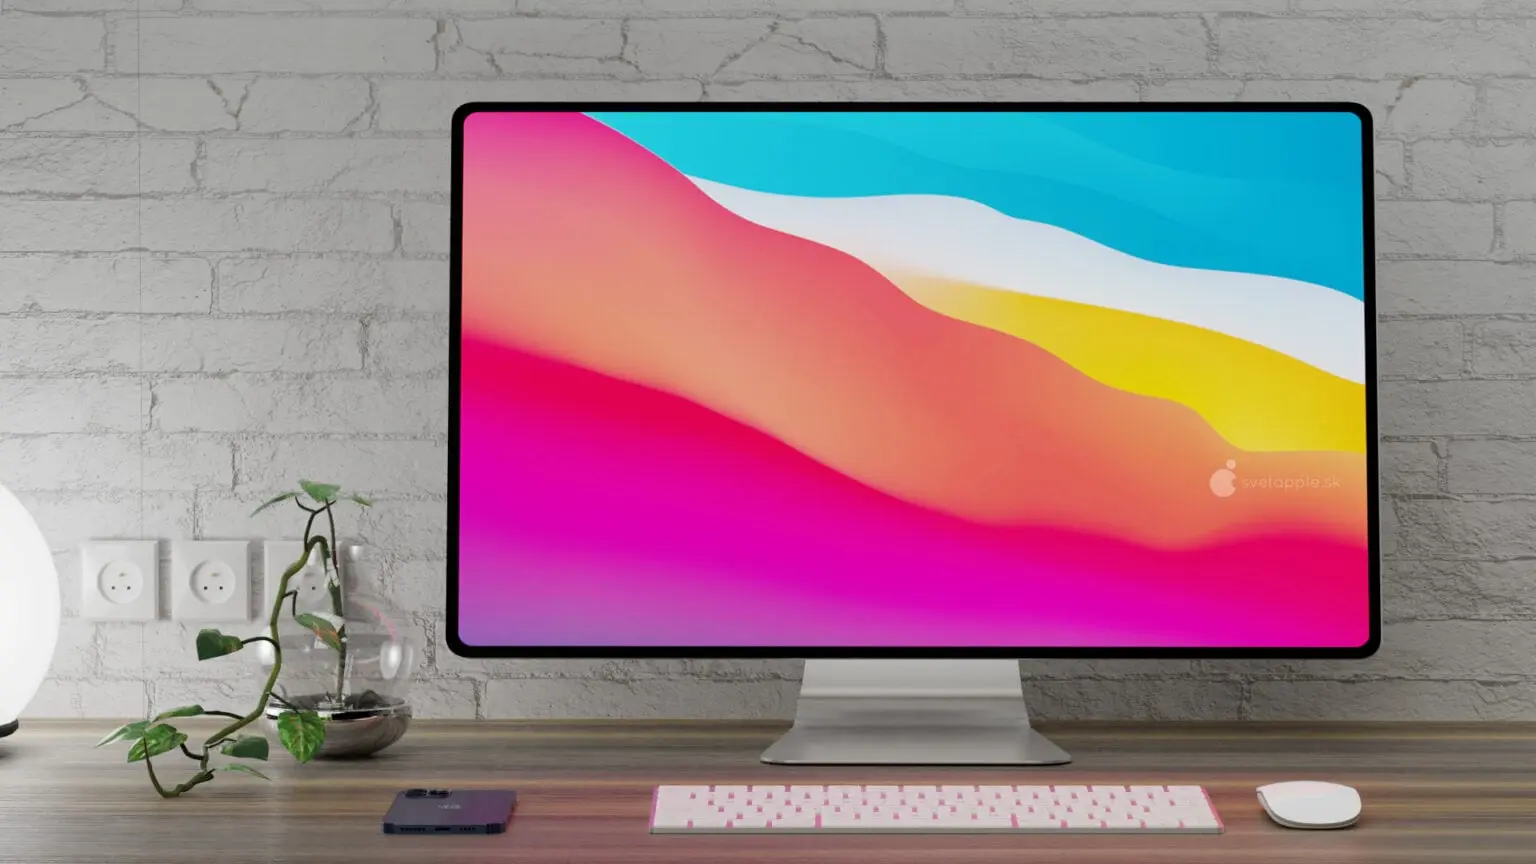 Apple lanzará el nuevo iMac Pro con chip M1 Pro y M1 Max